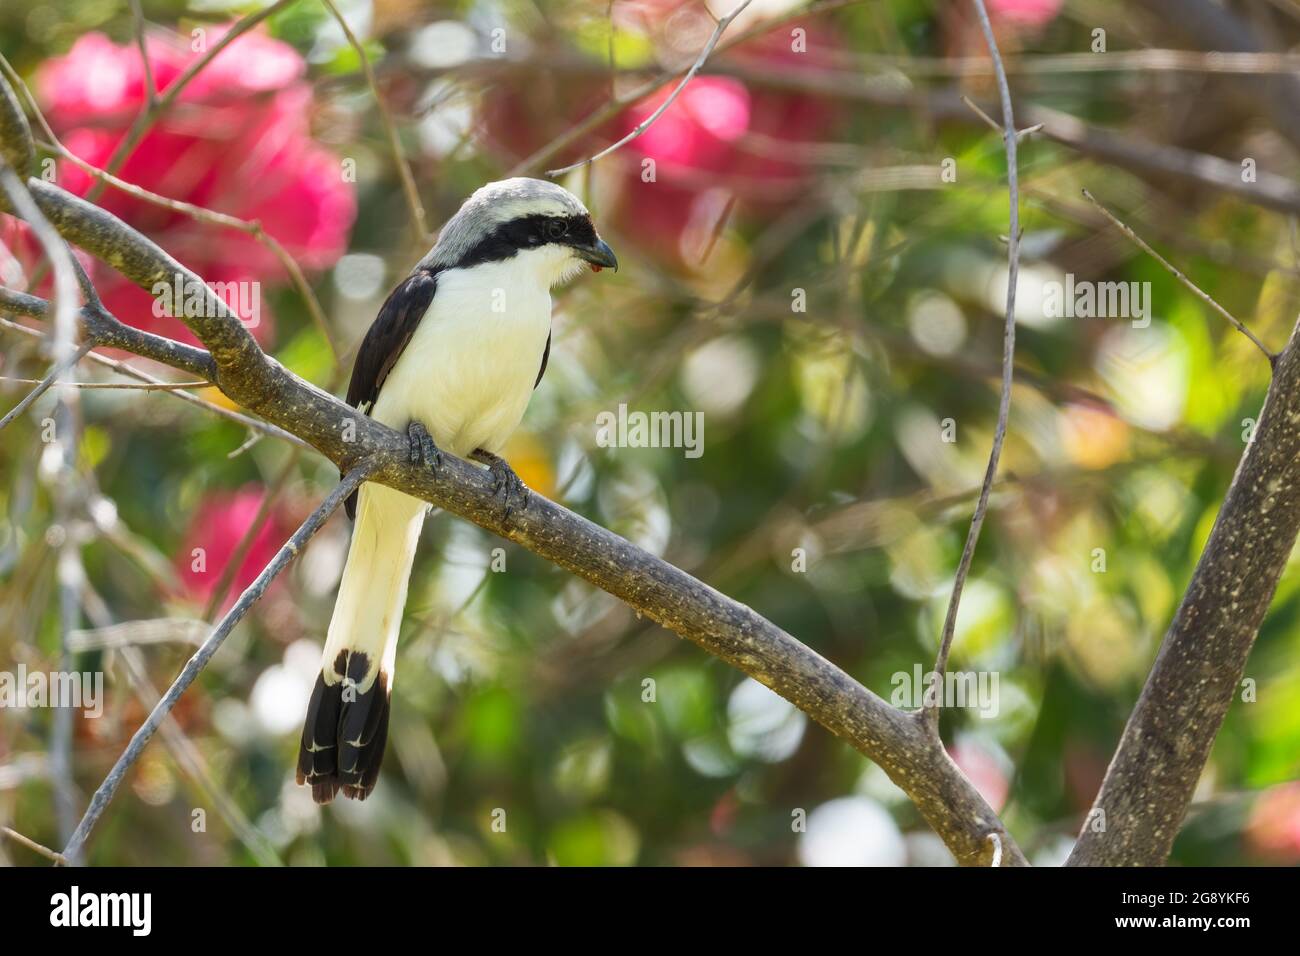 Fiscal à dos gris - Lanius excubitoroides, beau grand oiseau perching des buissons et des bois africains, lac Ziway, Ethiopie. Banque D'Images